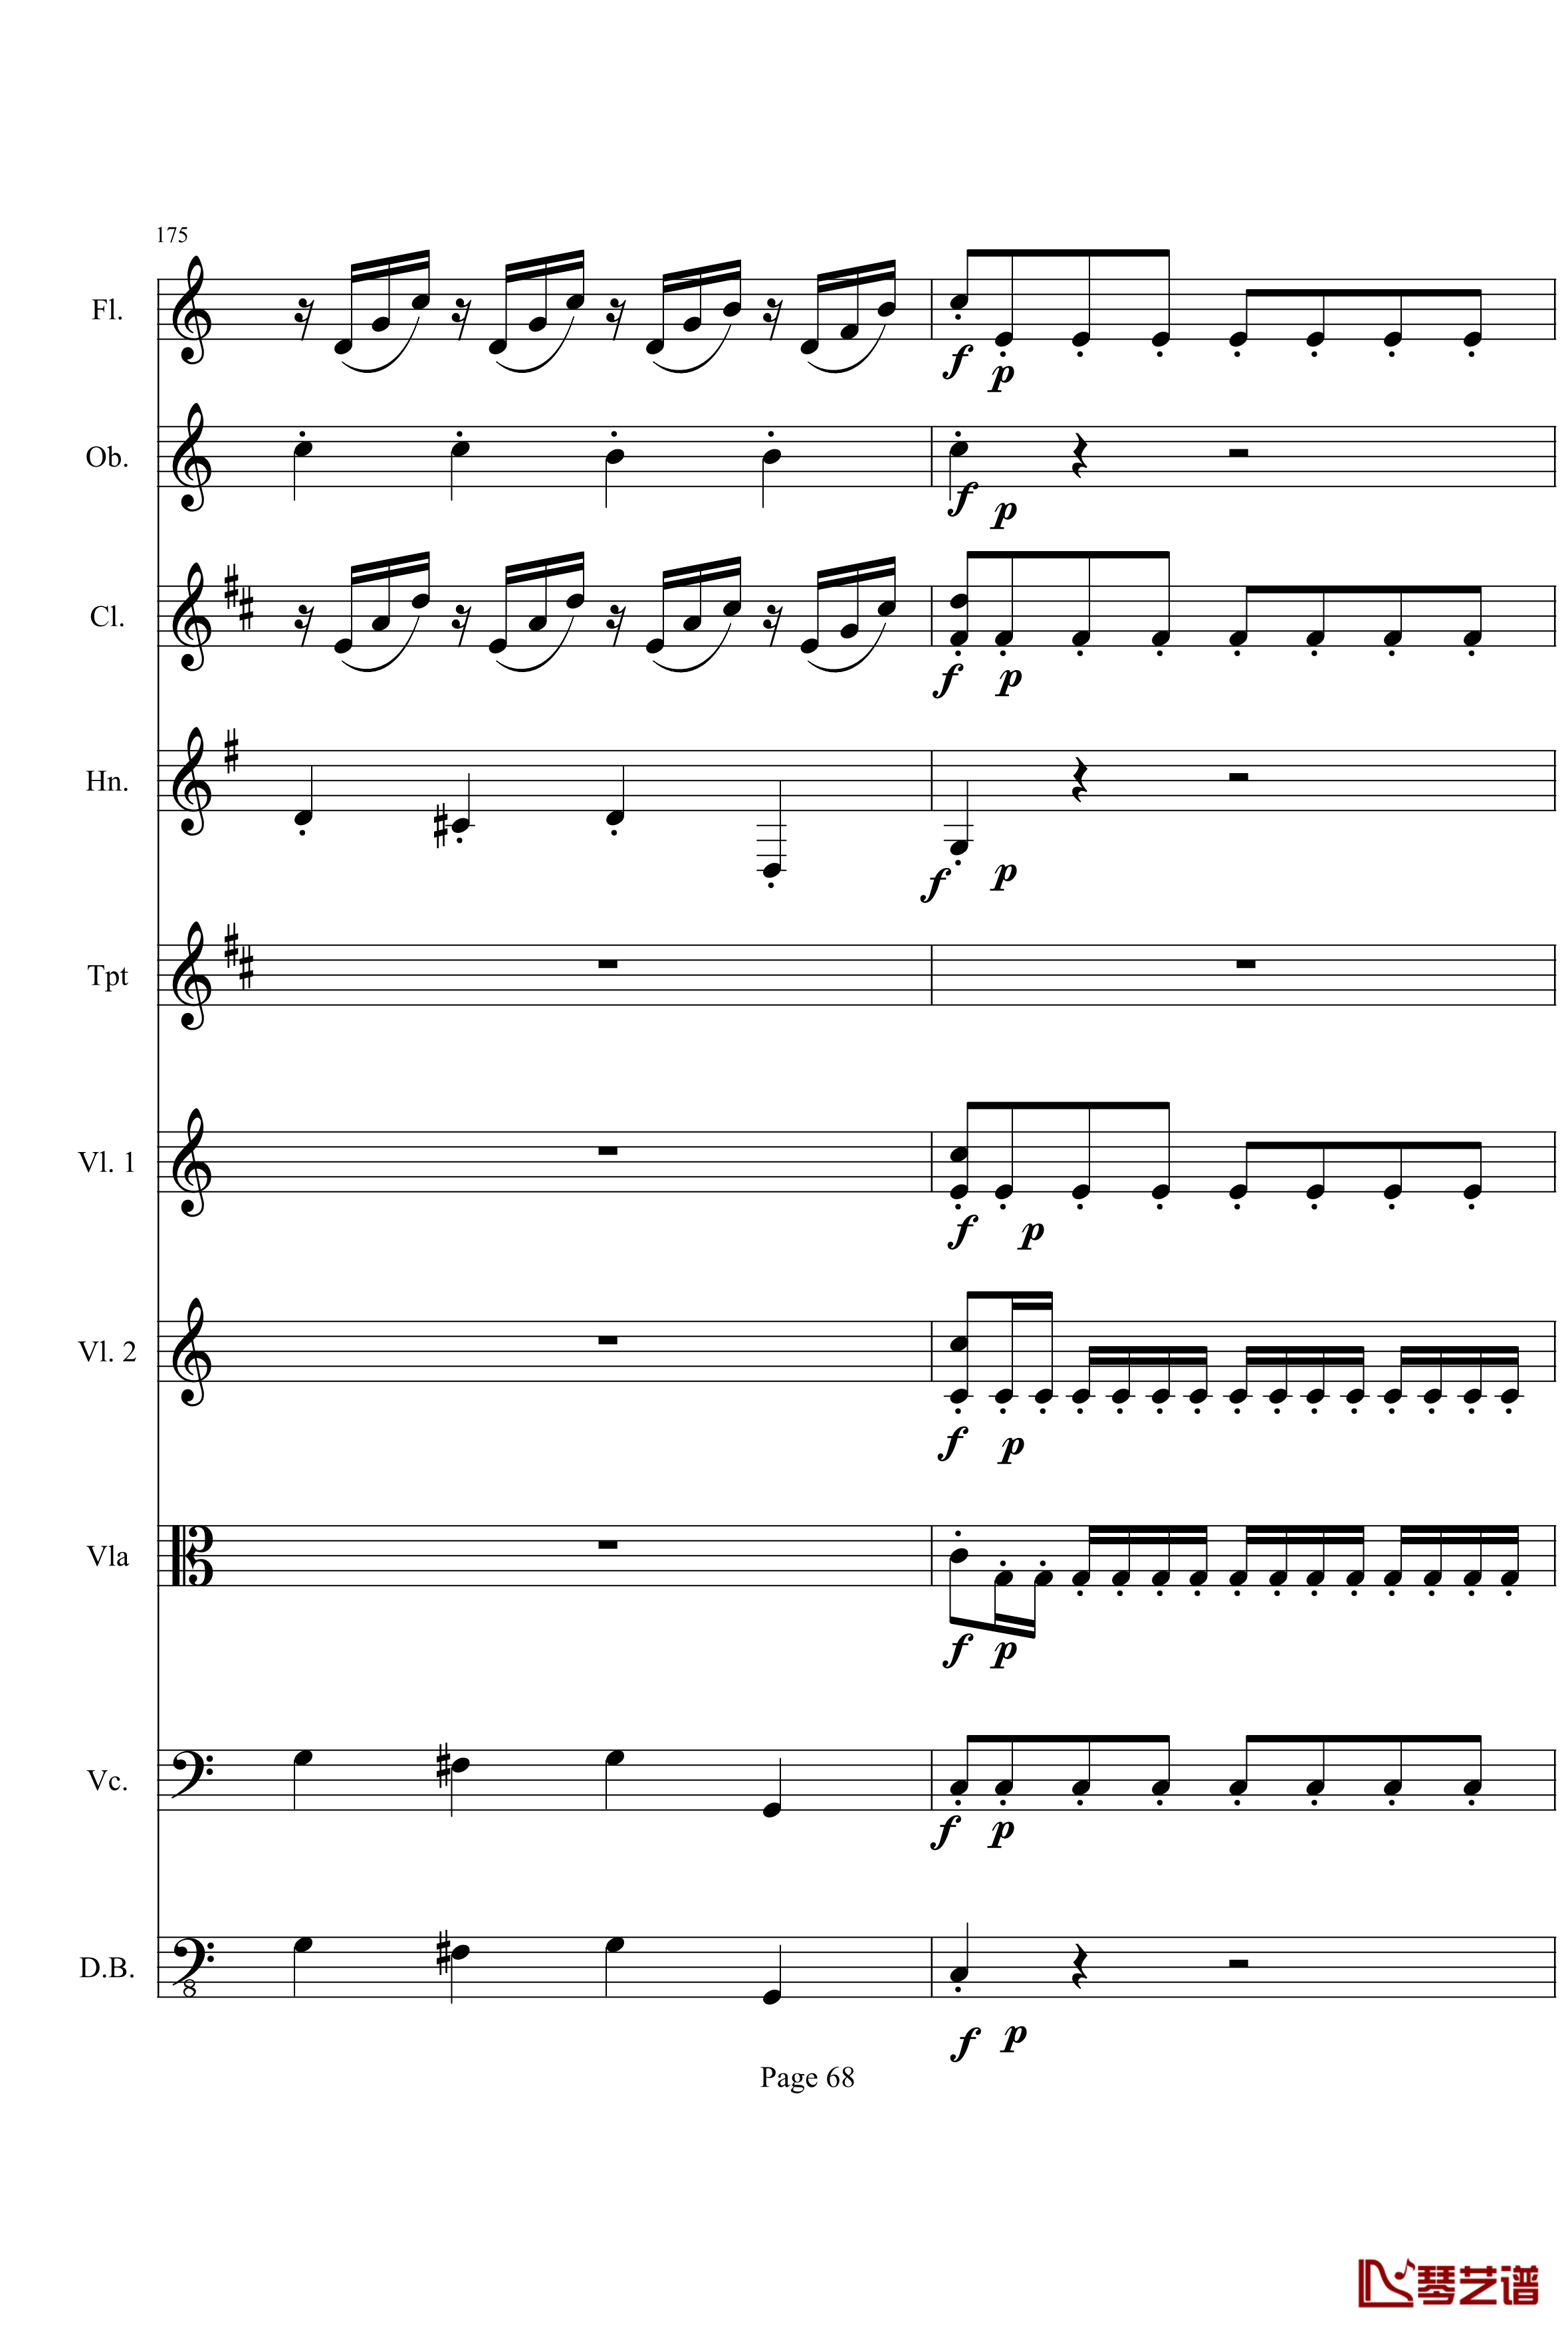 奏鸣曲之交响钢琴谱-第21首-Ⅰ-贝多芬-beethoven68